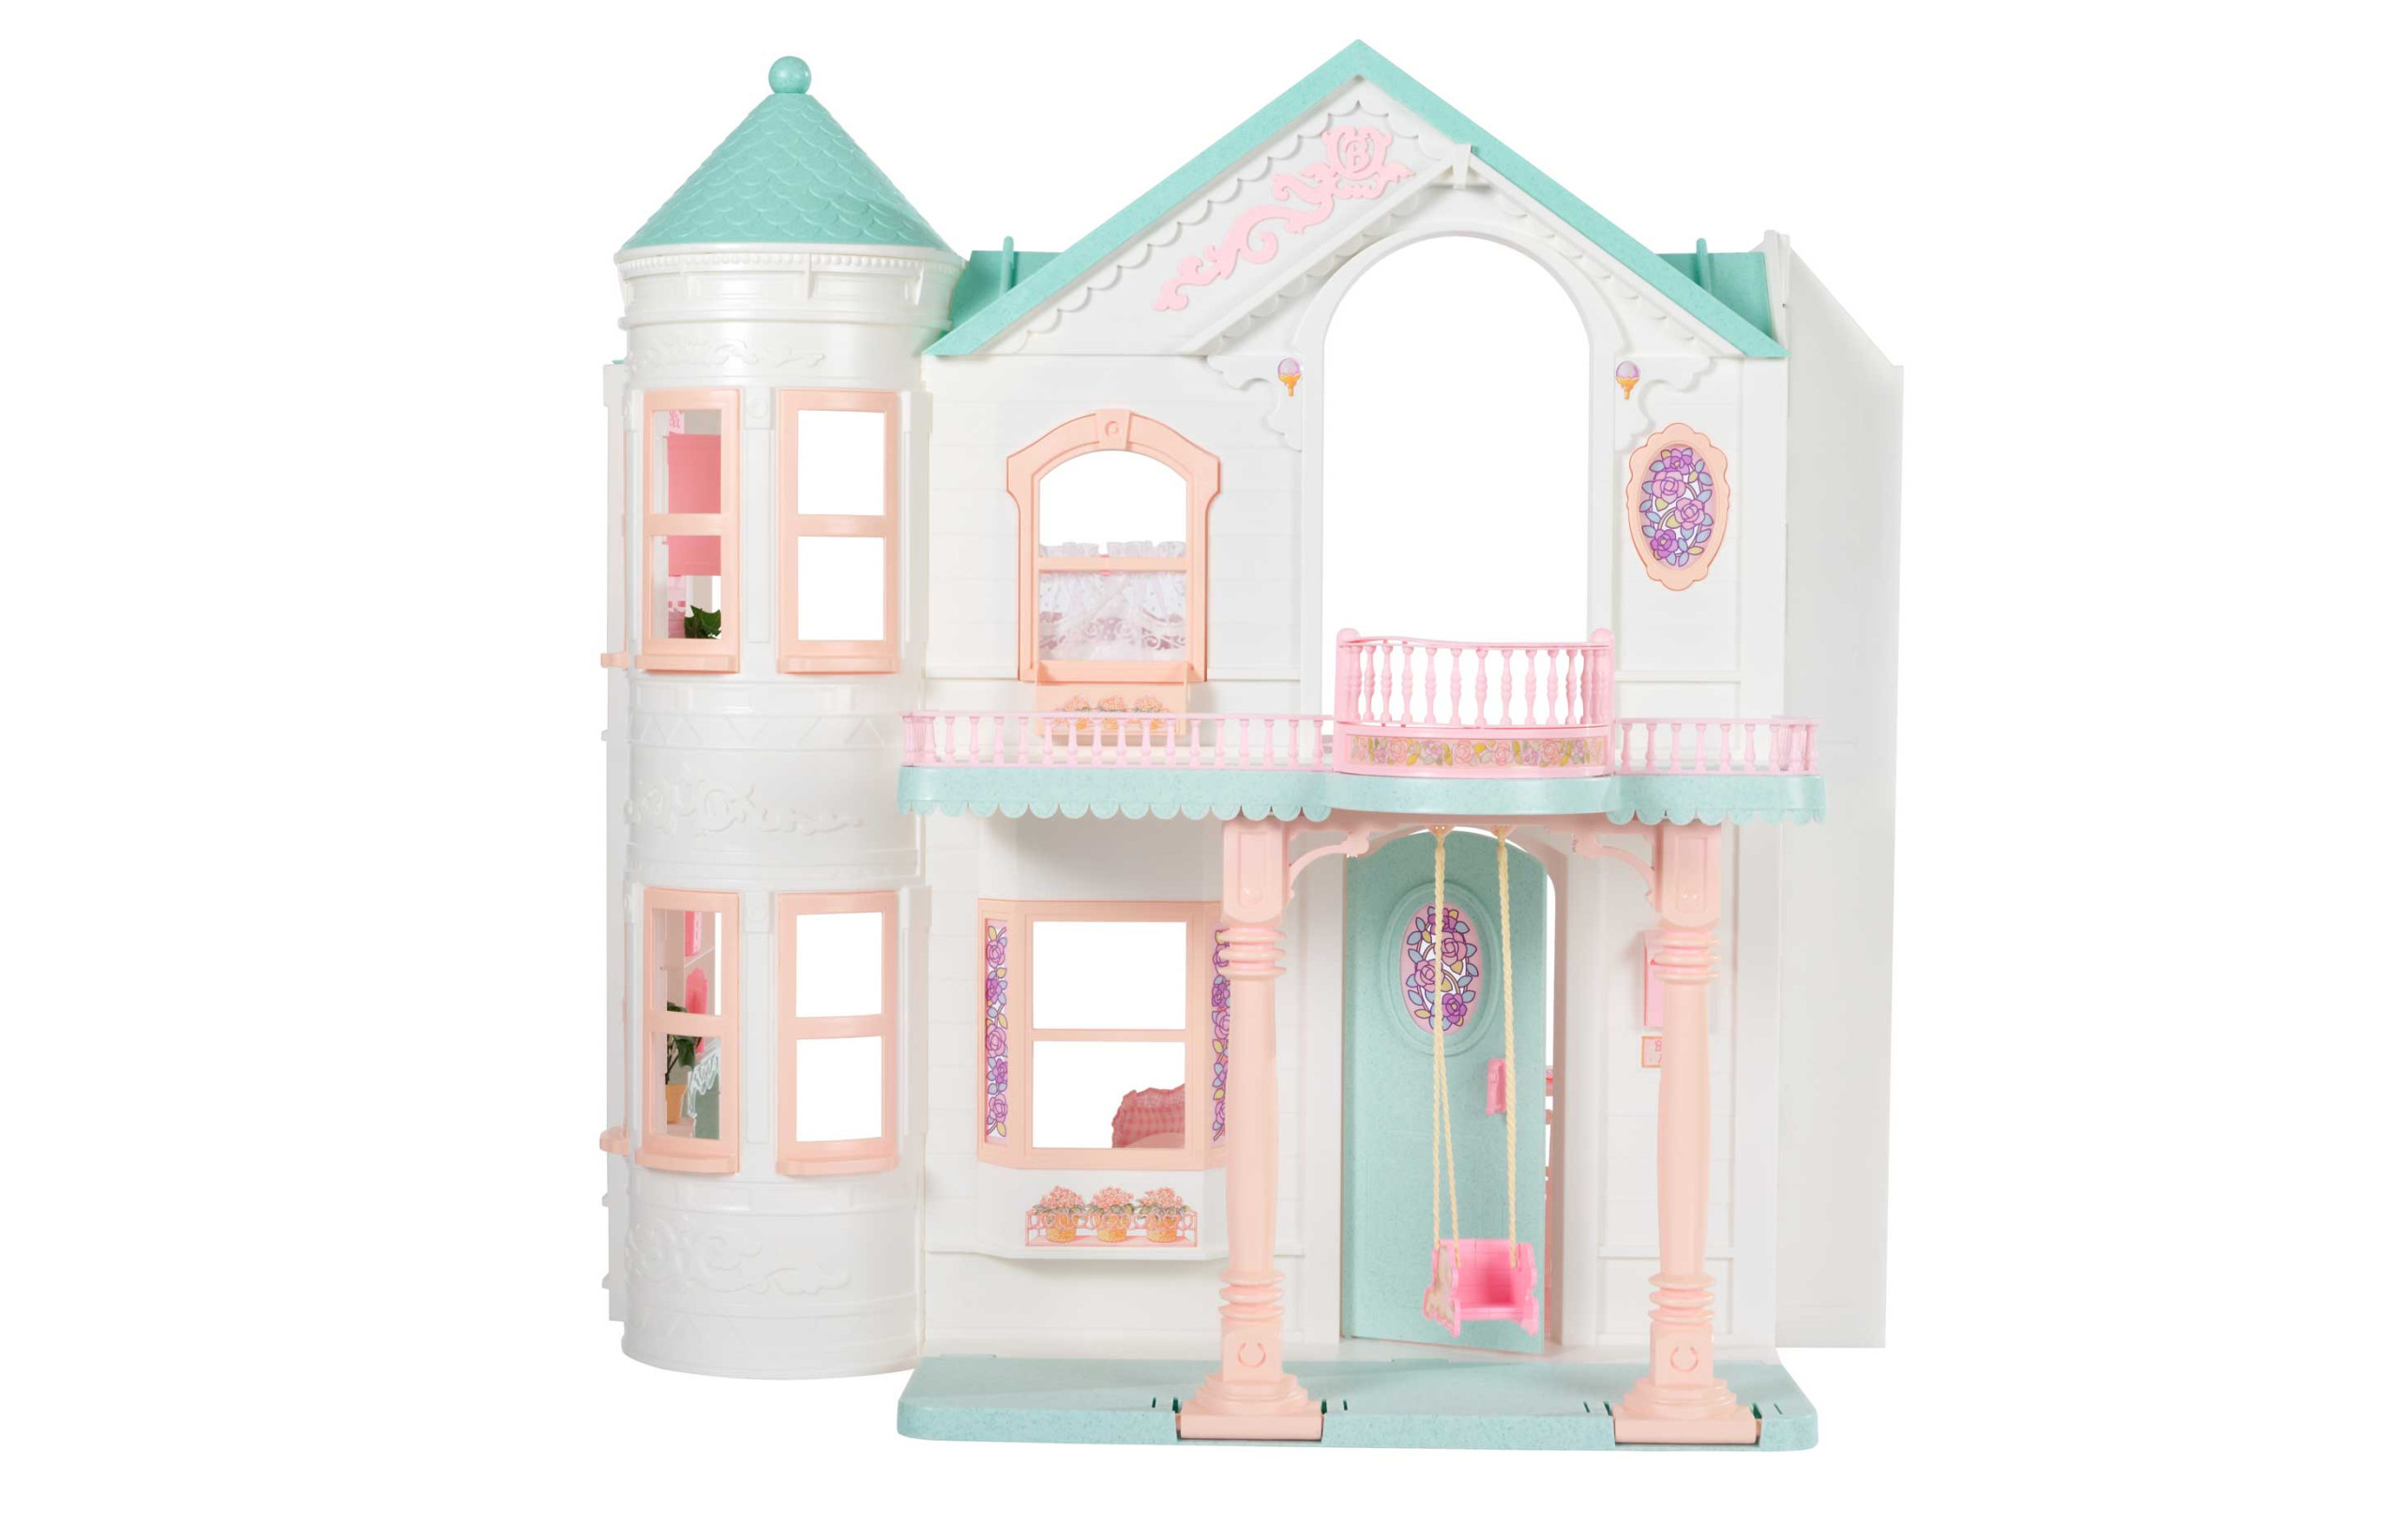 Barbie Jour Nuit Dreamhouse Maison à 3 étages Jouet Avec